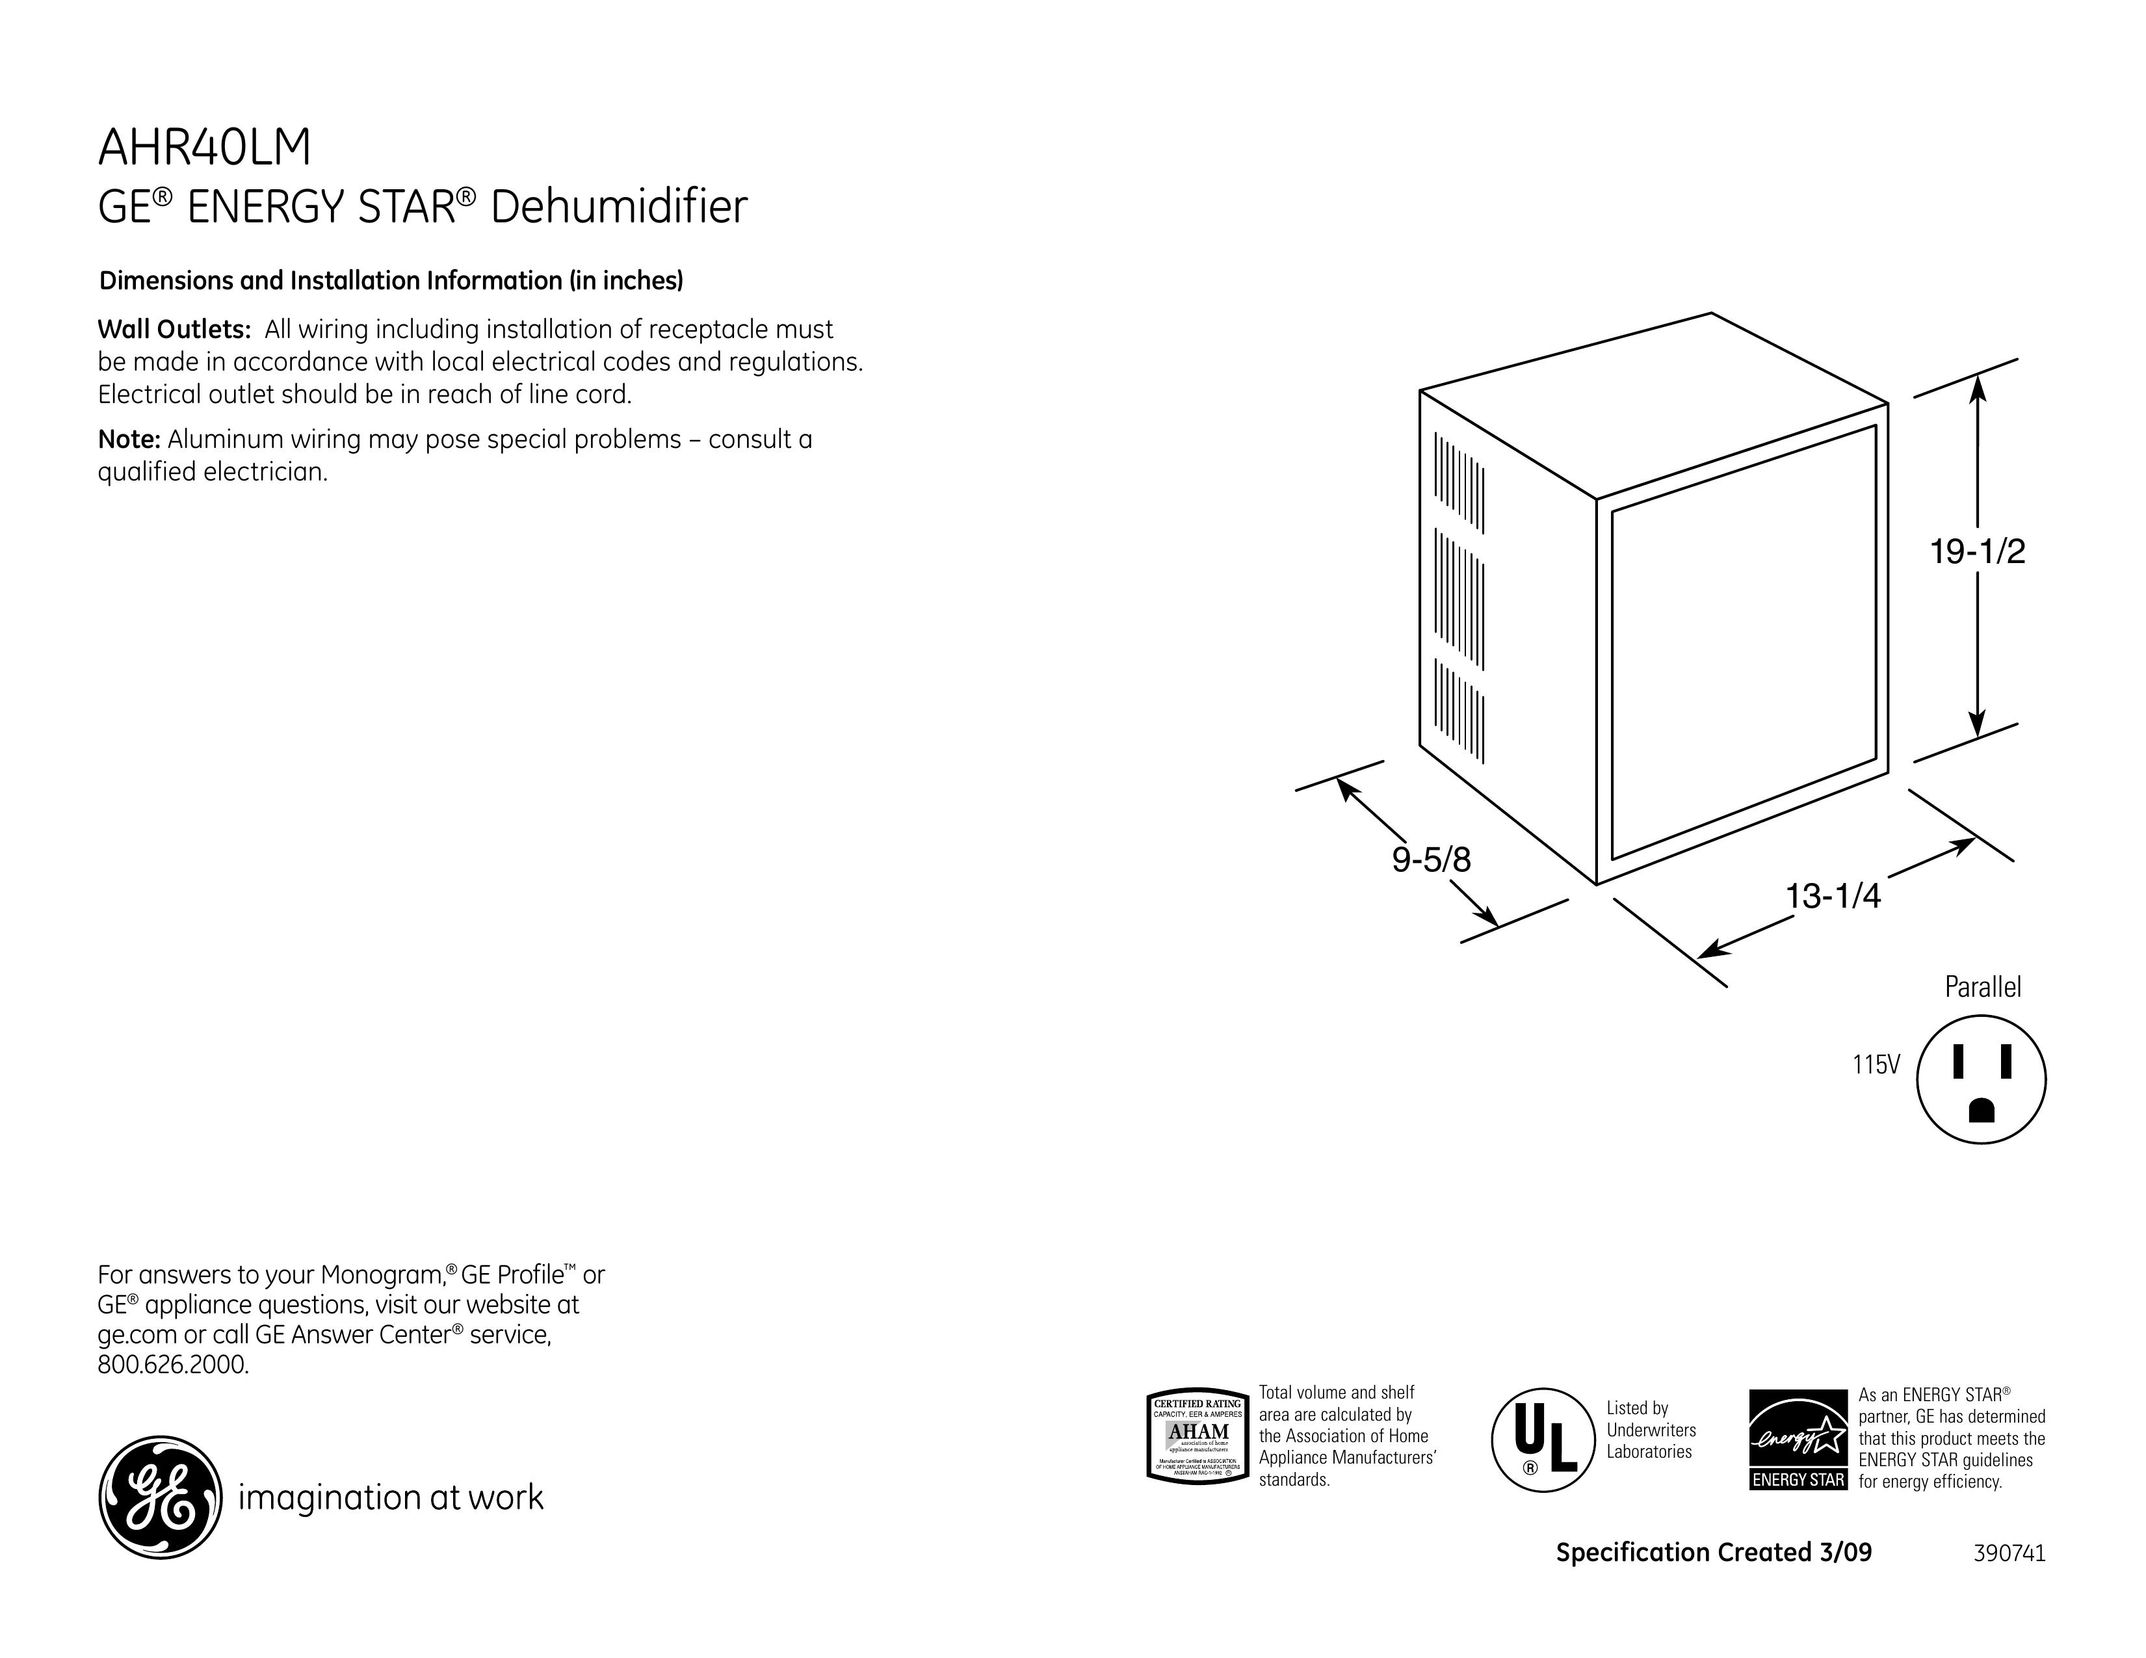 GE AHR40LM Dehumidifier User Manual